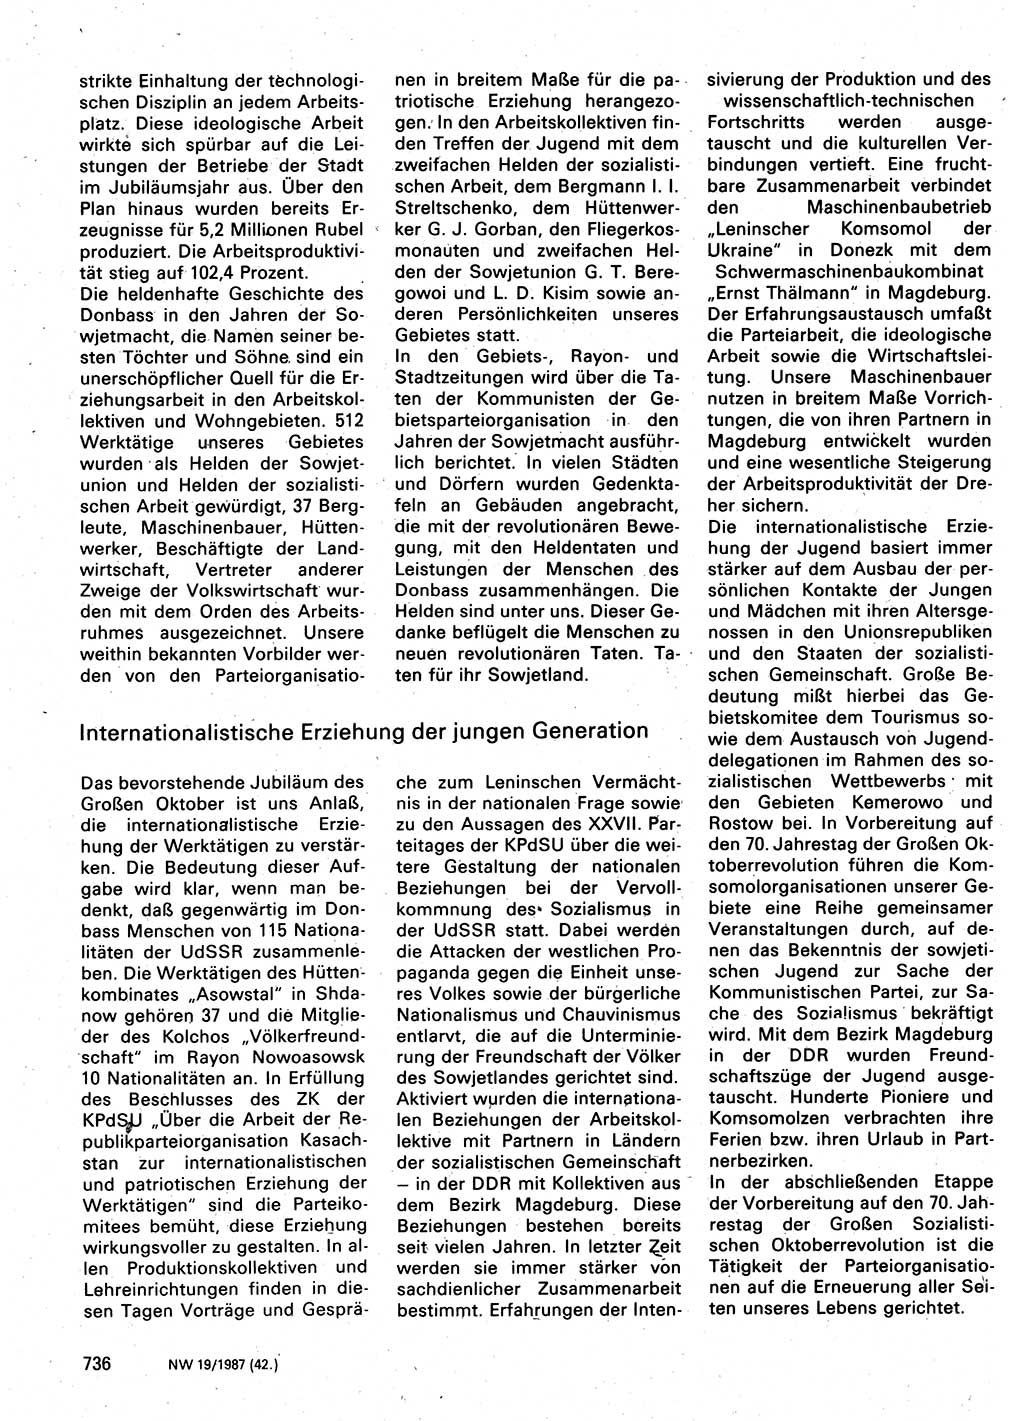 Neuer Weg (NW), Organ des Zentralkomitees (ZK) der SED (Sozialistische Einheitspartei Deutschlands) für Fragen des Parteilebens, 42. Jahrgang [Deutsche Demokratische Republik (DDR)] 1987, Seite 736 (NW ZK SED DDR 1987, S. 736)